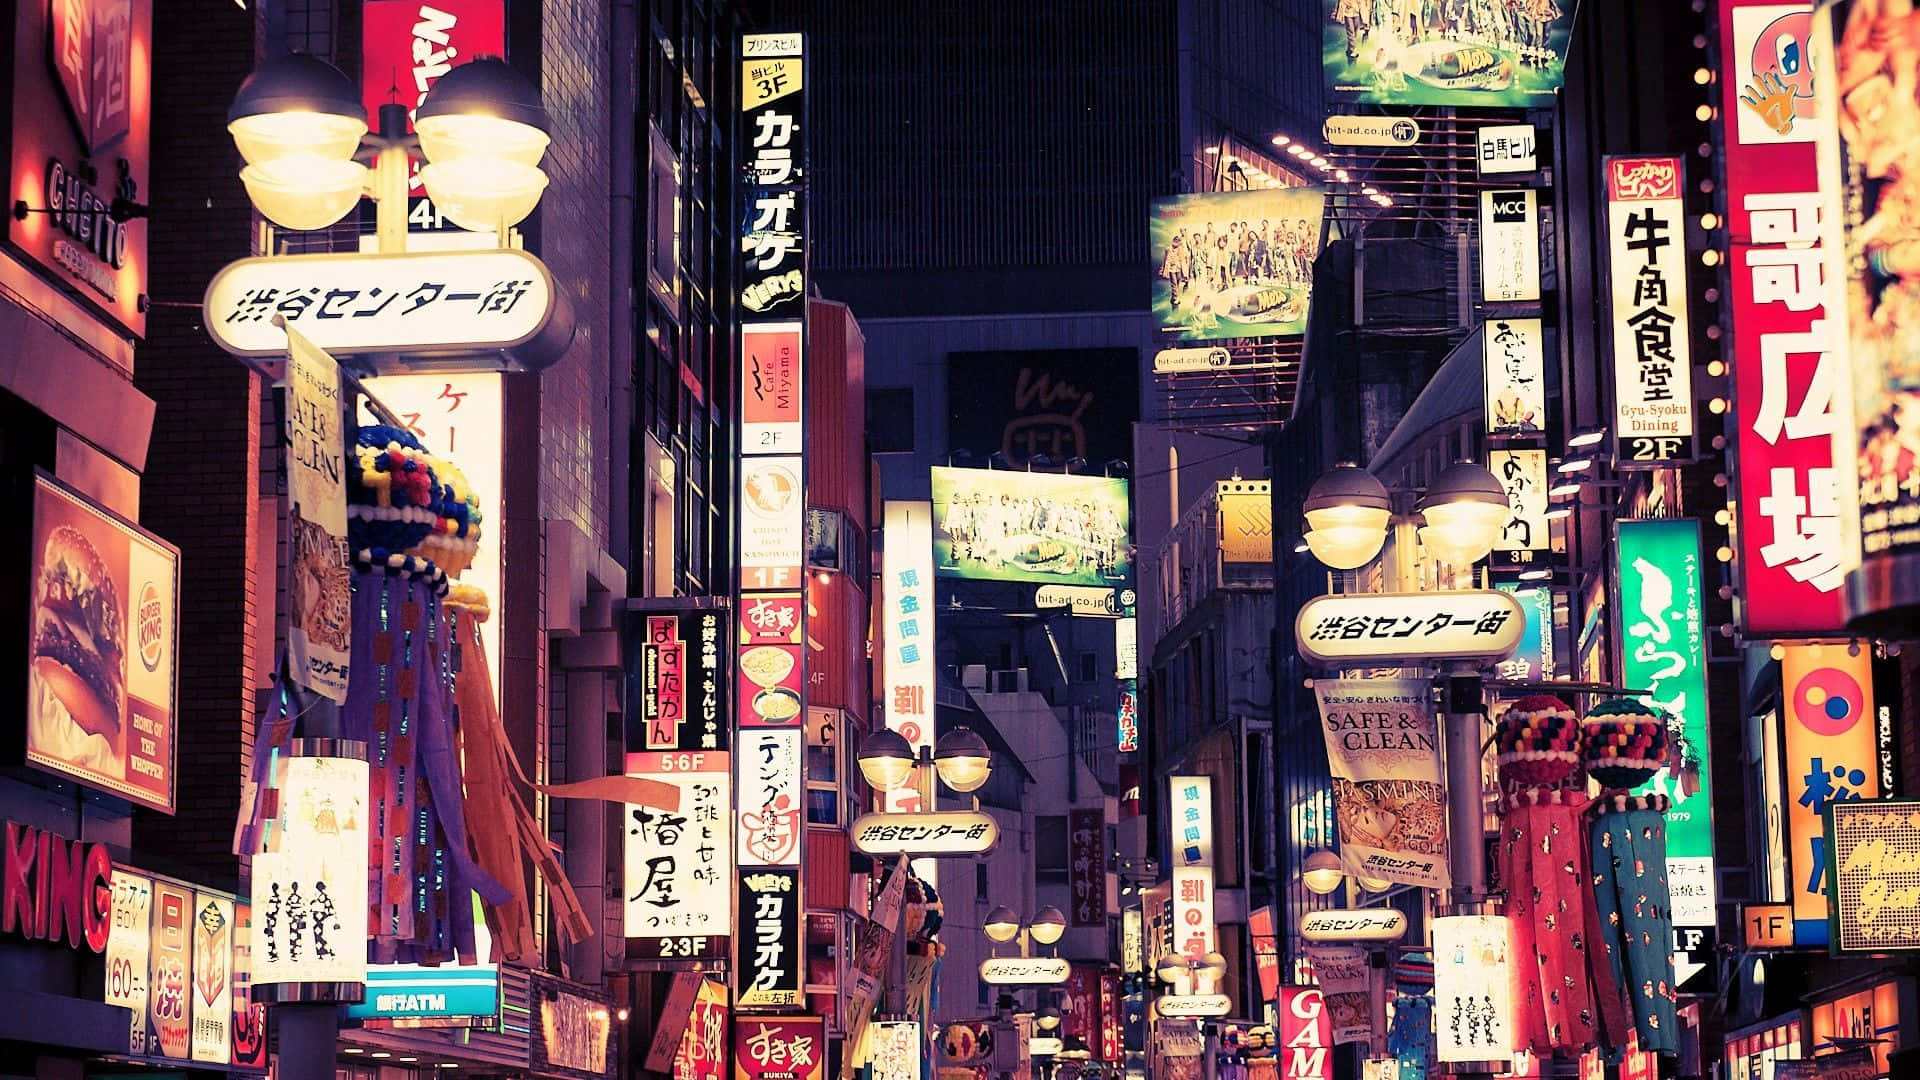 Bakgrundsbildfrån Tokyo Med Ljusa Gatunamn